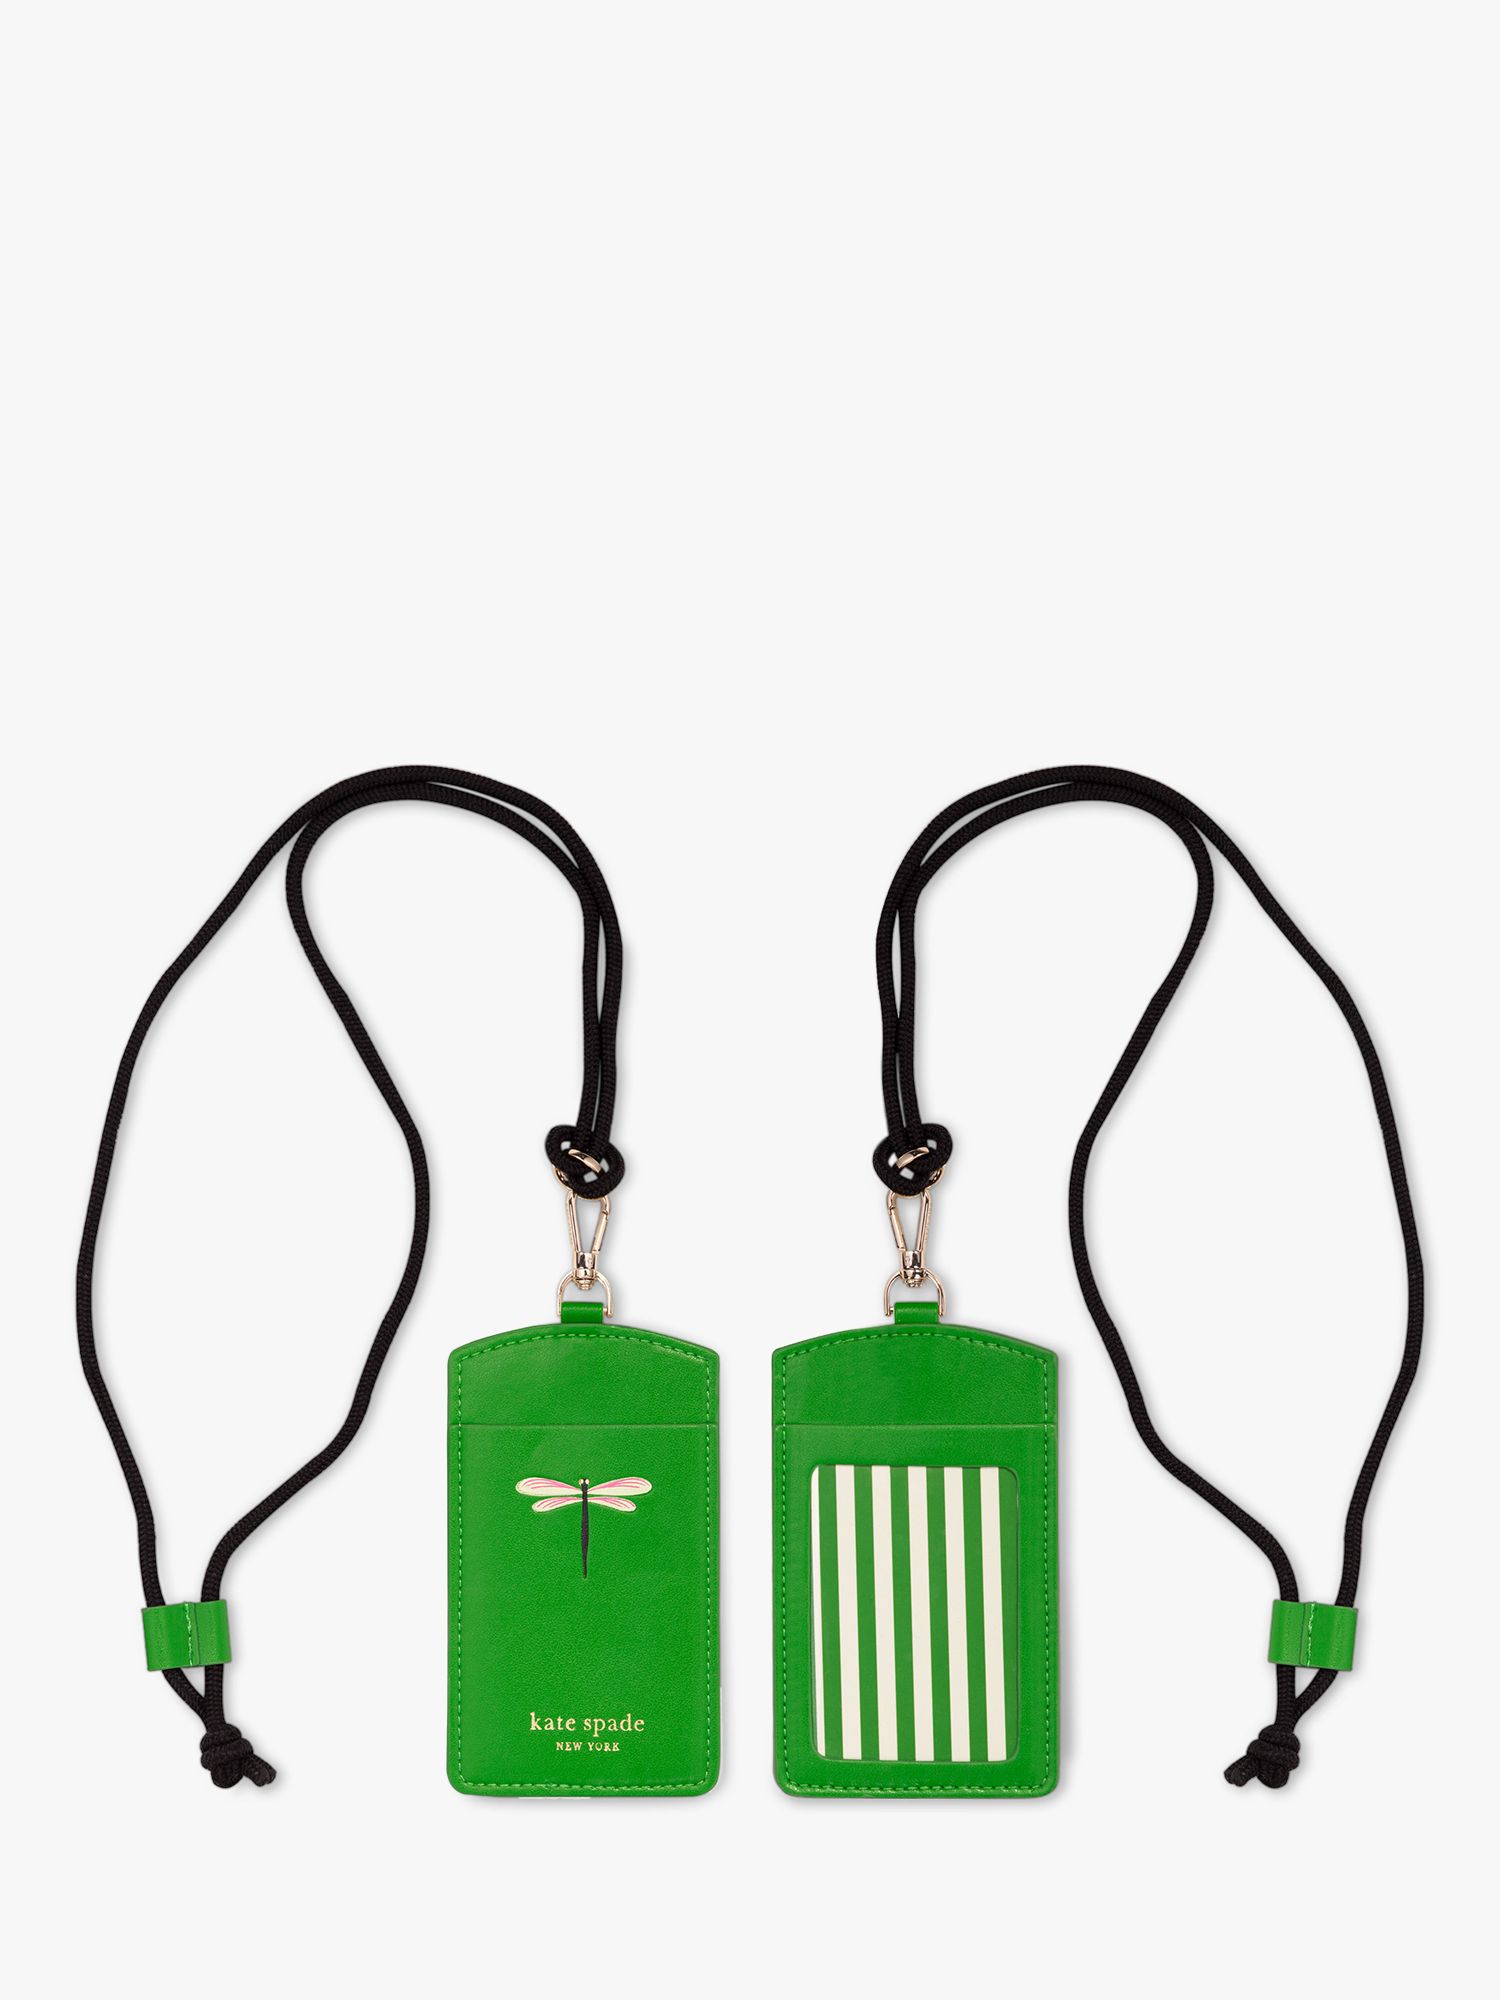 Handbags, Bags & Purses - kate spade new york, Green | John Lewis & Partners